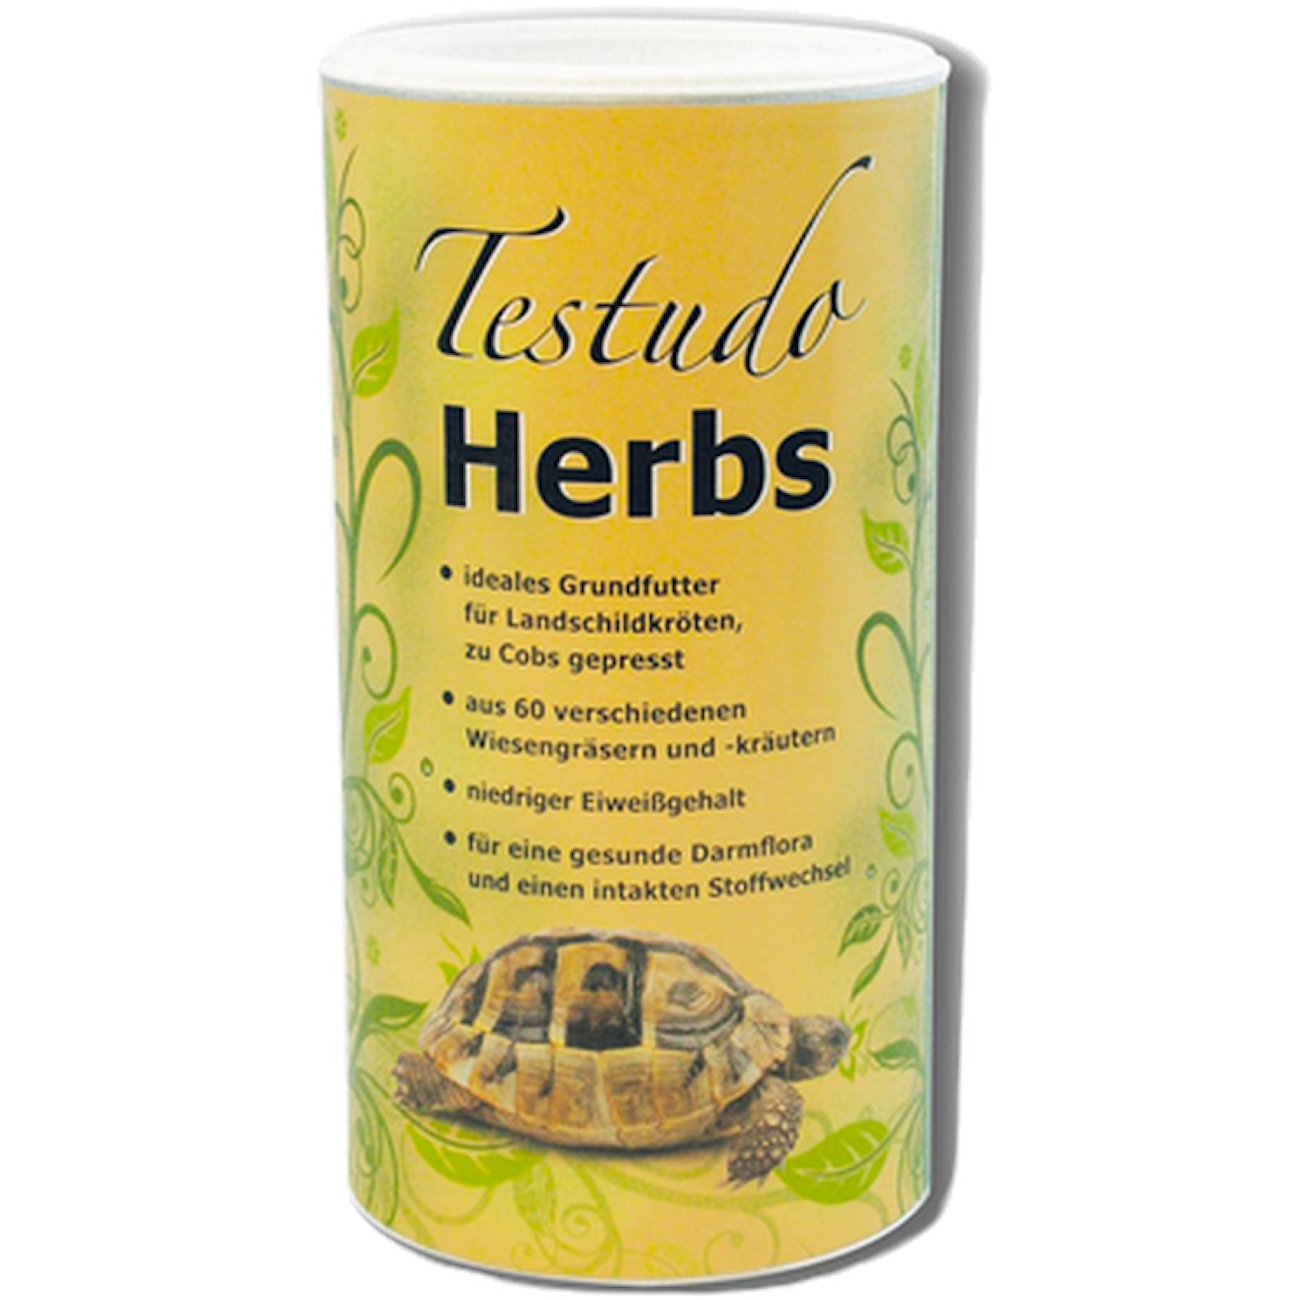 Testudo Herbs 500 g